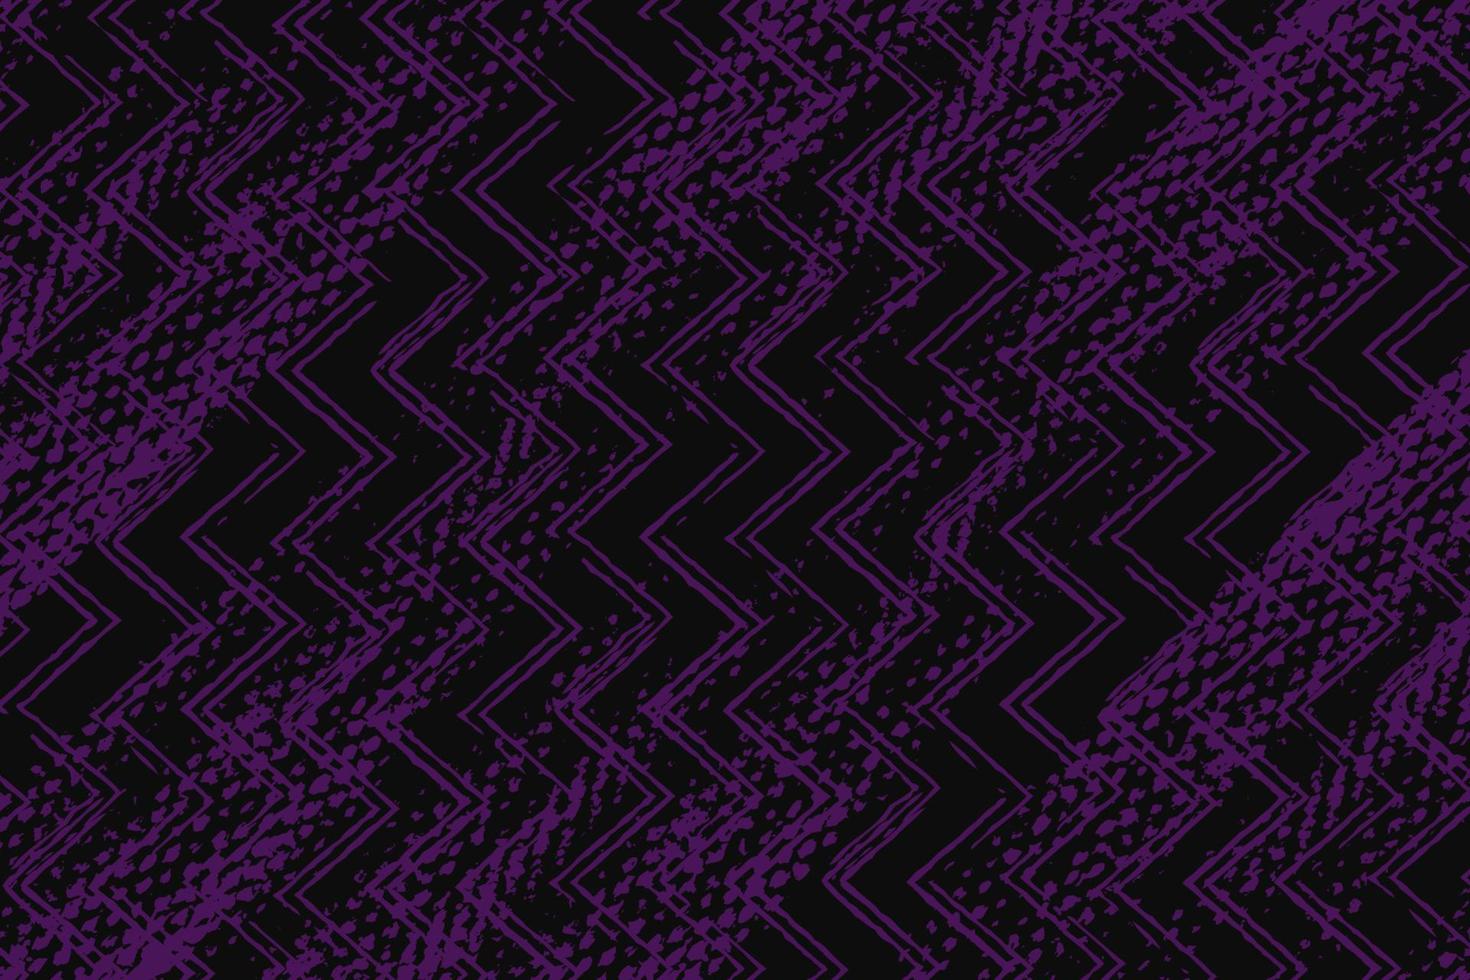 astratto viola e nero grunge struttura sfondo con zigzag stile vettore